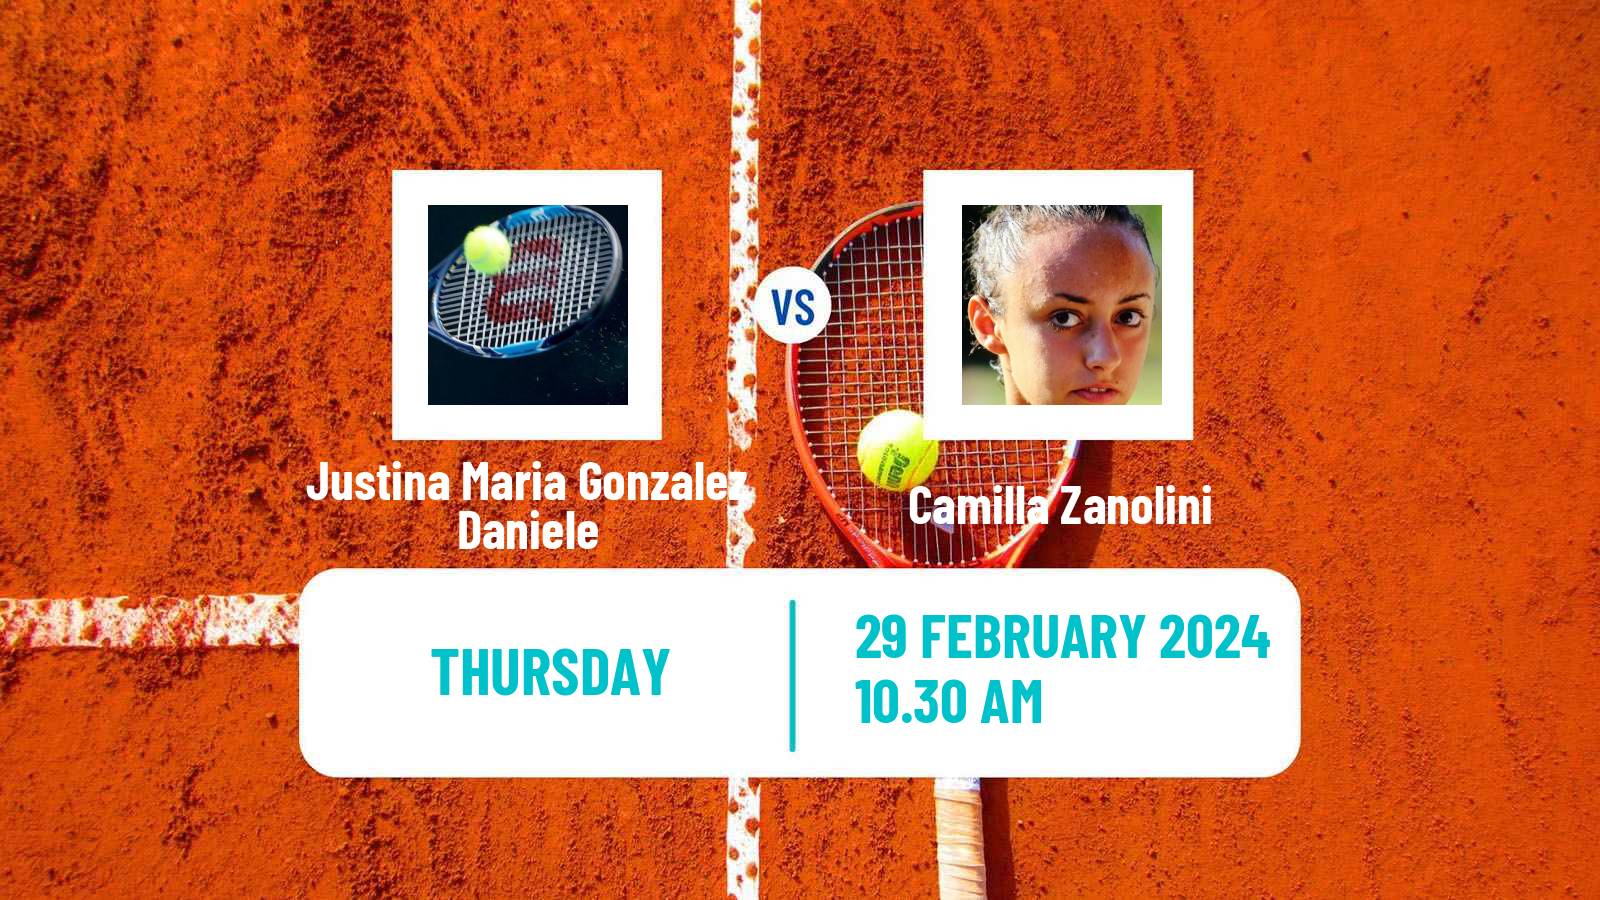 Tennis ITF W15 Tucuman Women Justina Maria Gonzalez Daniele - Camilla Zanolini